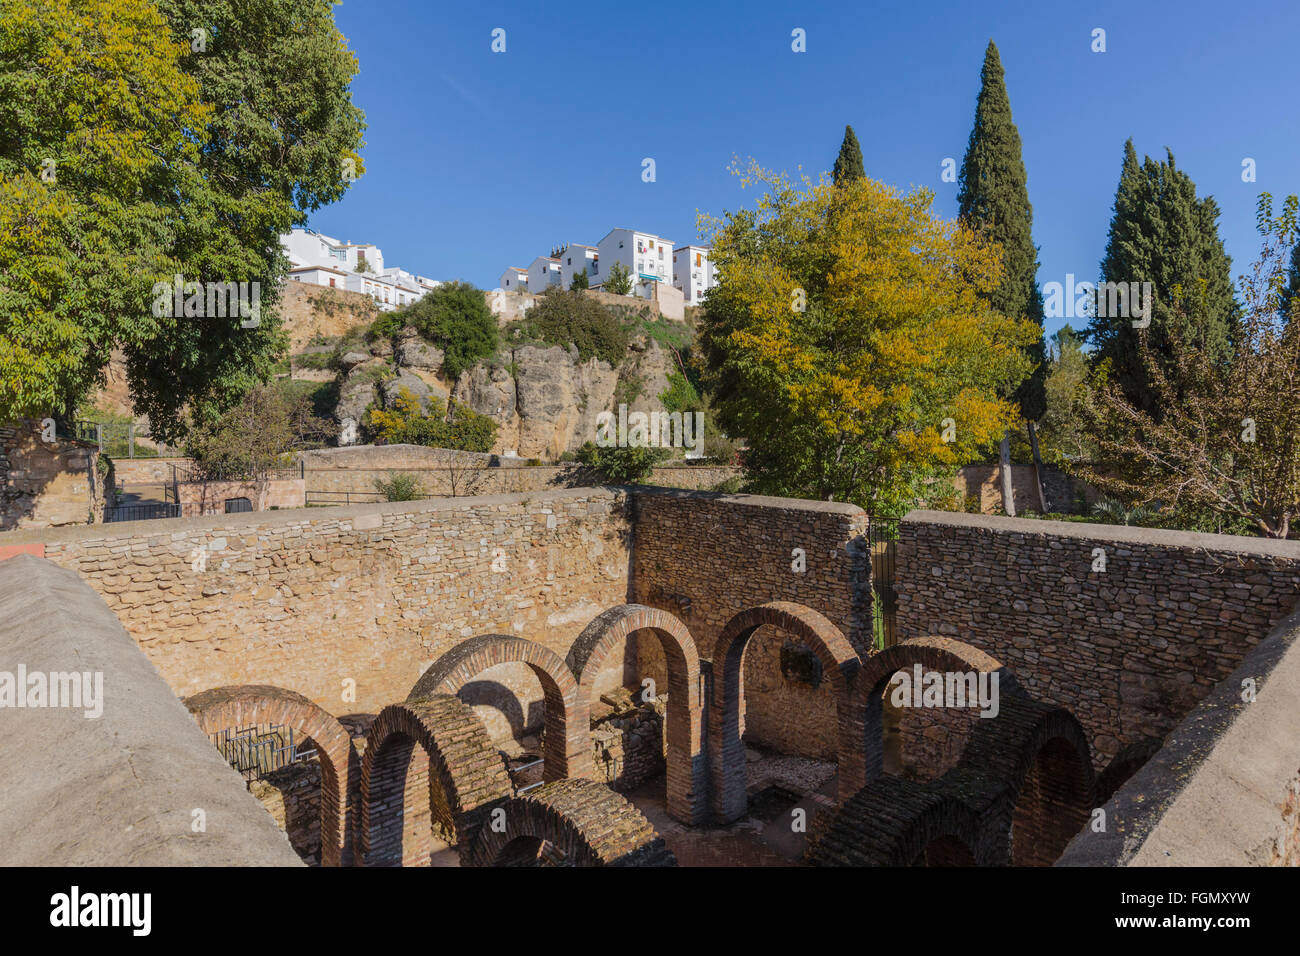 Ronda, Provinz Malaga, Andalusien, Südspanien. Ruinen des Baños Arabes oder arabischen Bäder. Stockfoto